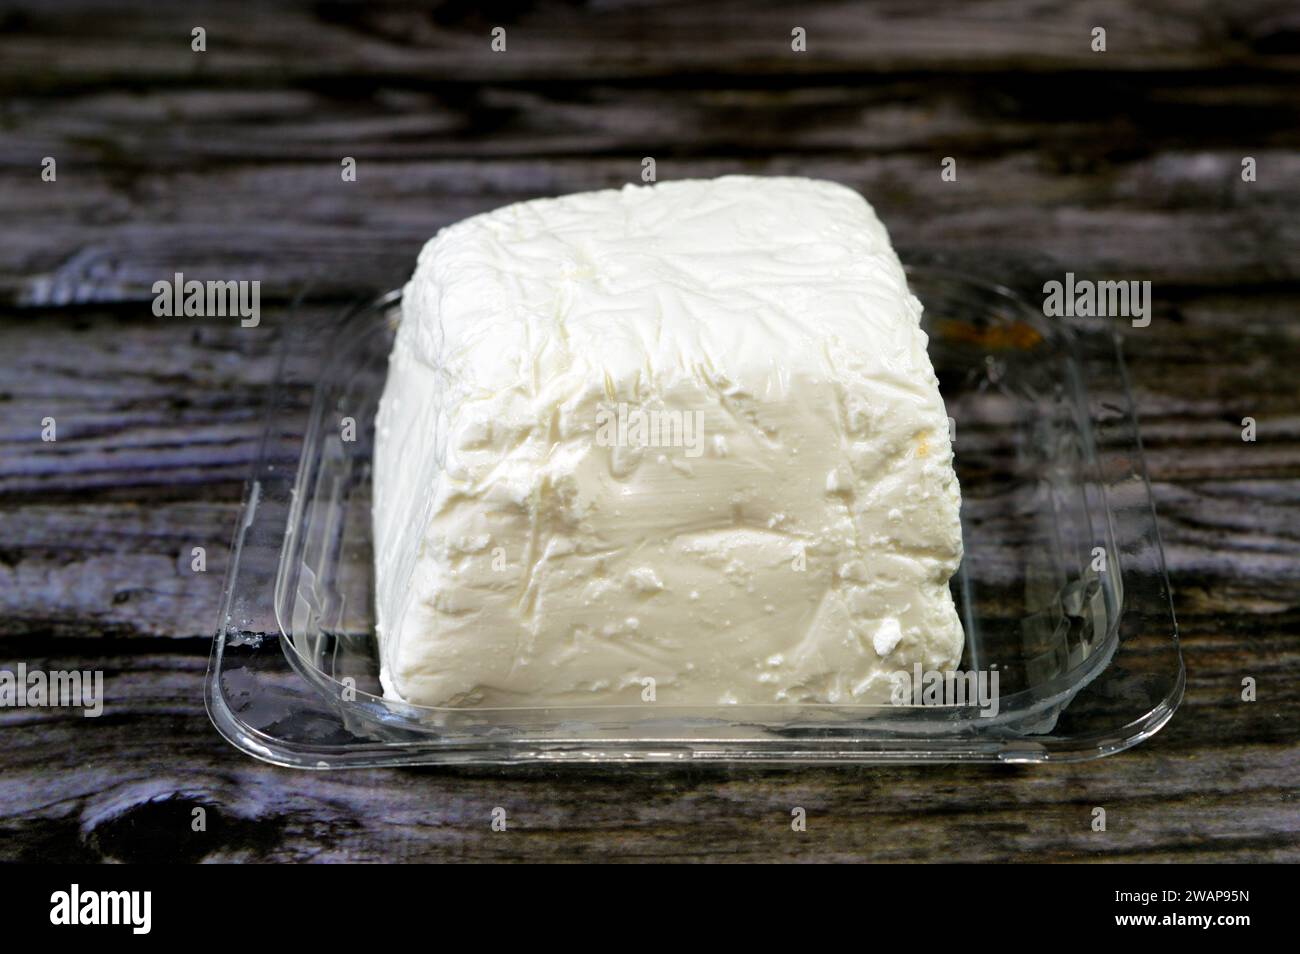 Un cube de fromage blanc à faible teneur en sel, une touche savoureuse à une variété de recettes, utilisé pour préparer des salades, des pizzas, des sandwichs, des pâtes et plus encore, riche nutriment A. Banque D'Images